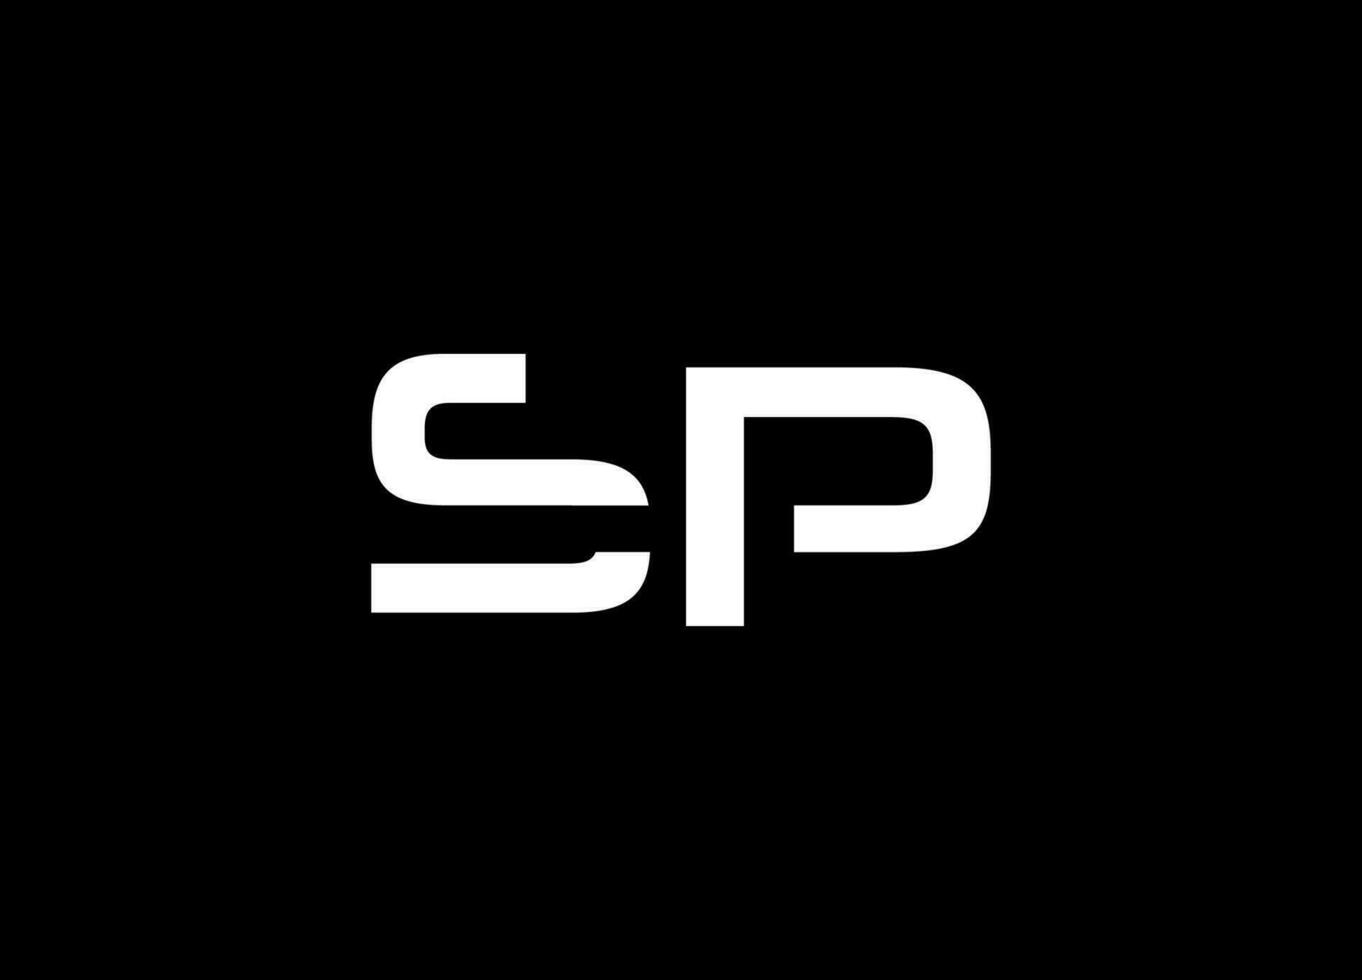 brief sp luxe logo ontwerp vector. sp logo, brief sp logo ontwerp, abstract sp logo, schoon en modern logo stijl. professioneel en minimalistische brief sp ps logo ontwerp met wit kleur vector